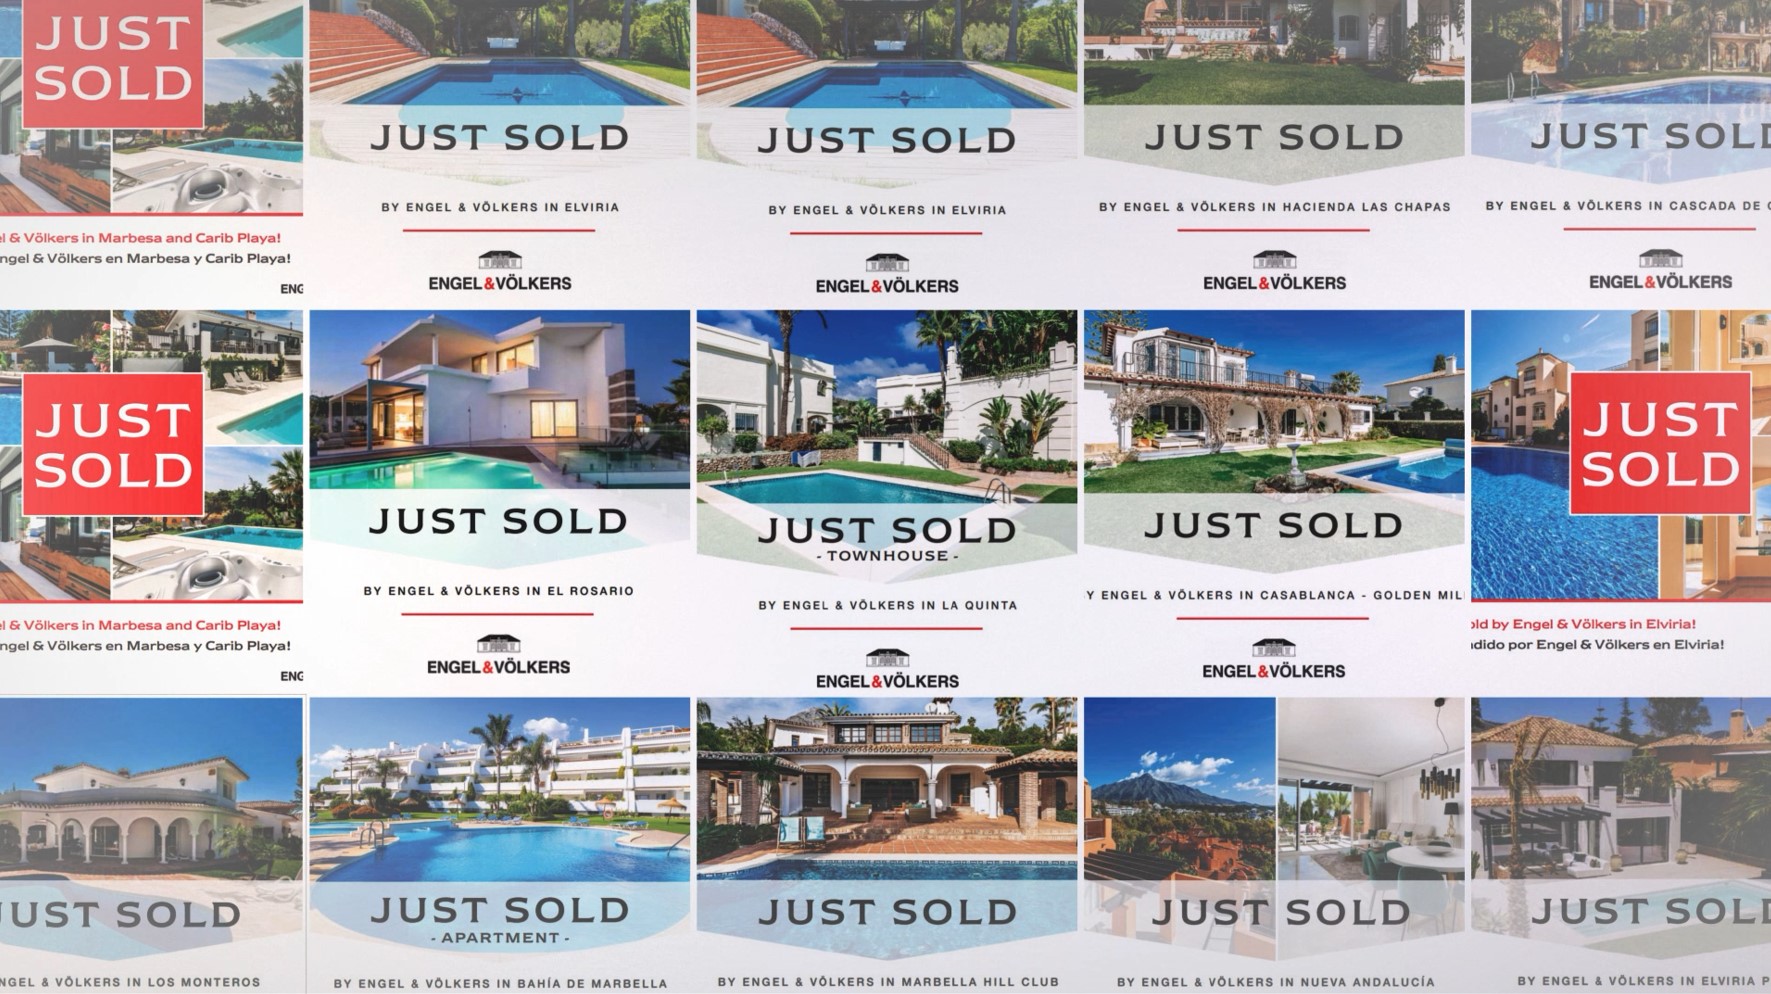 Innerhalb von 240 Tagen haben wir mehr als 240 Immobilien verkauft